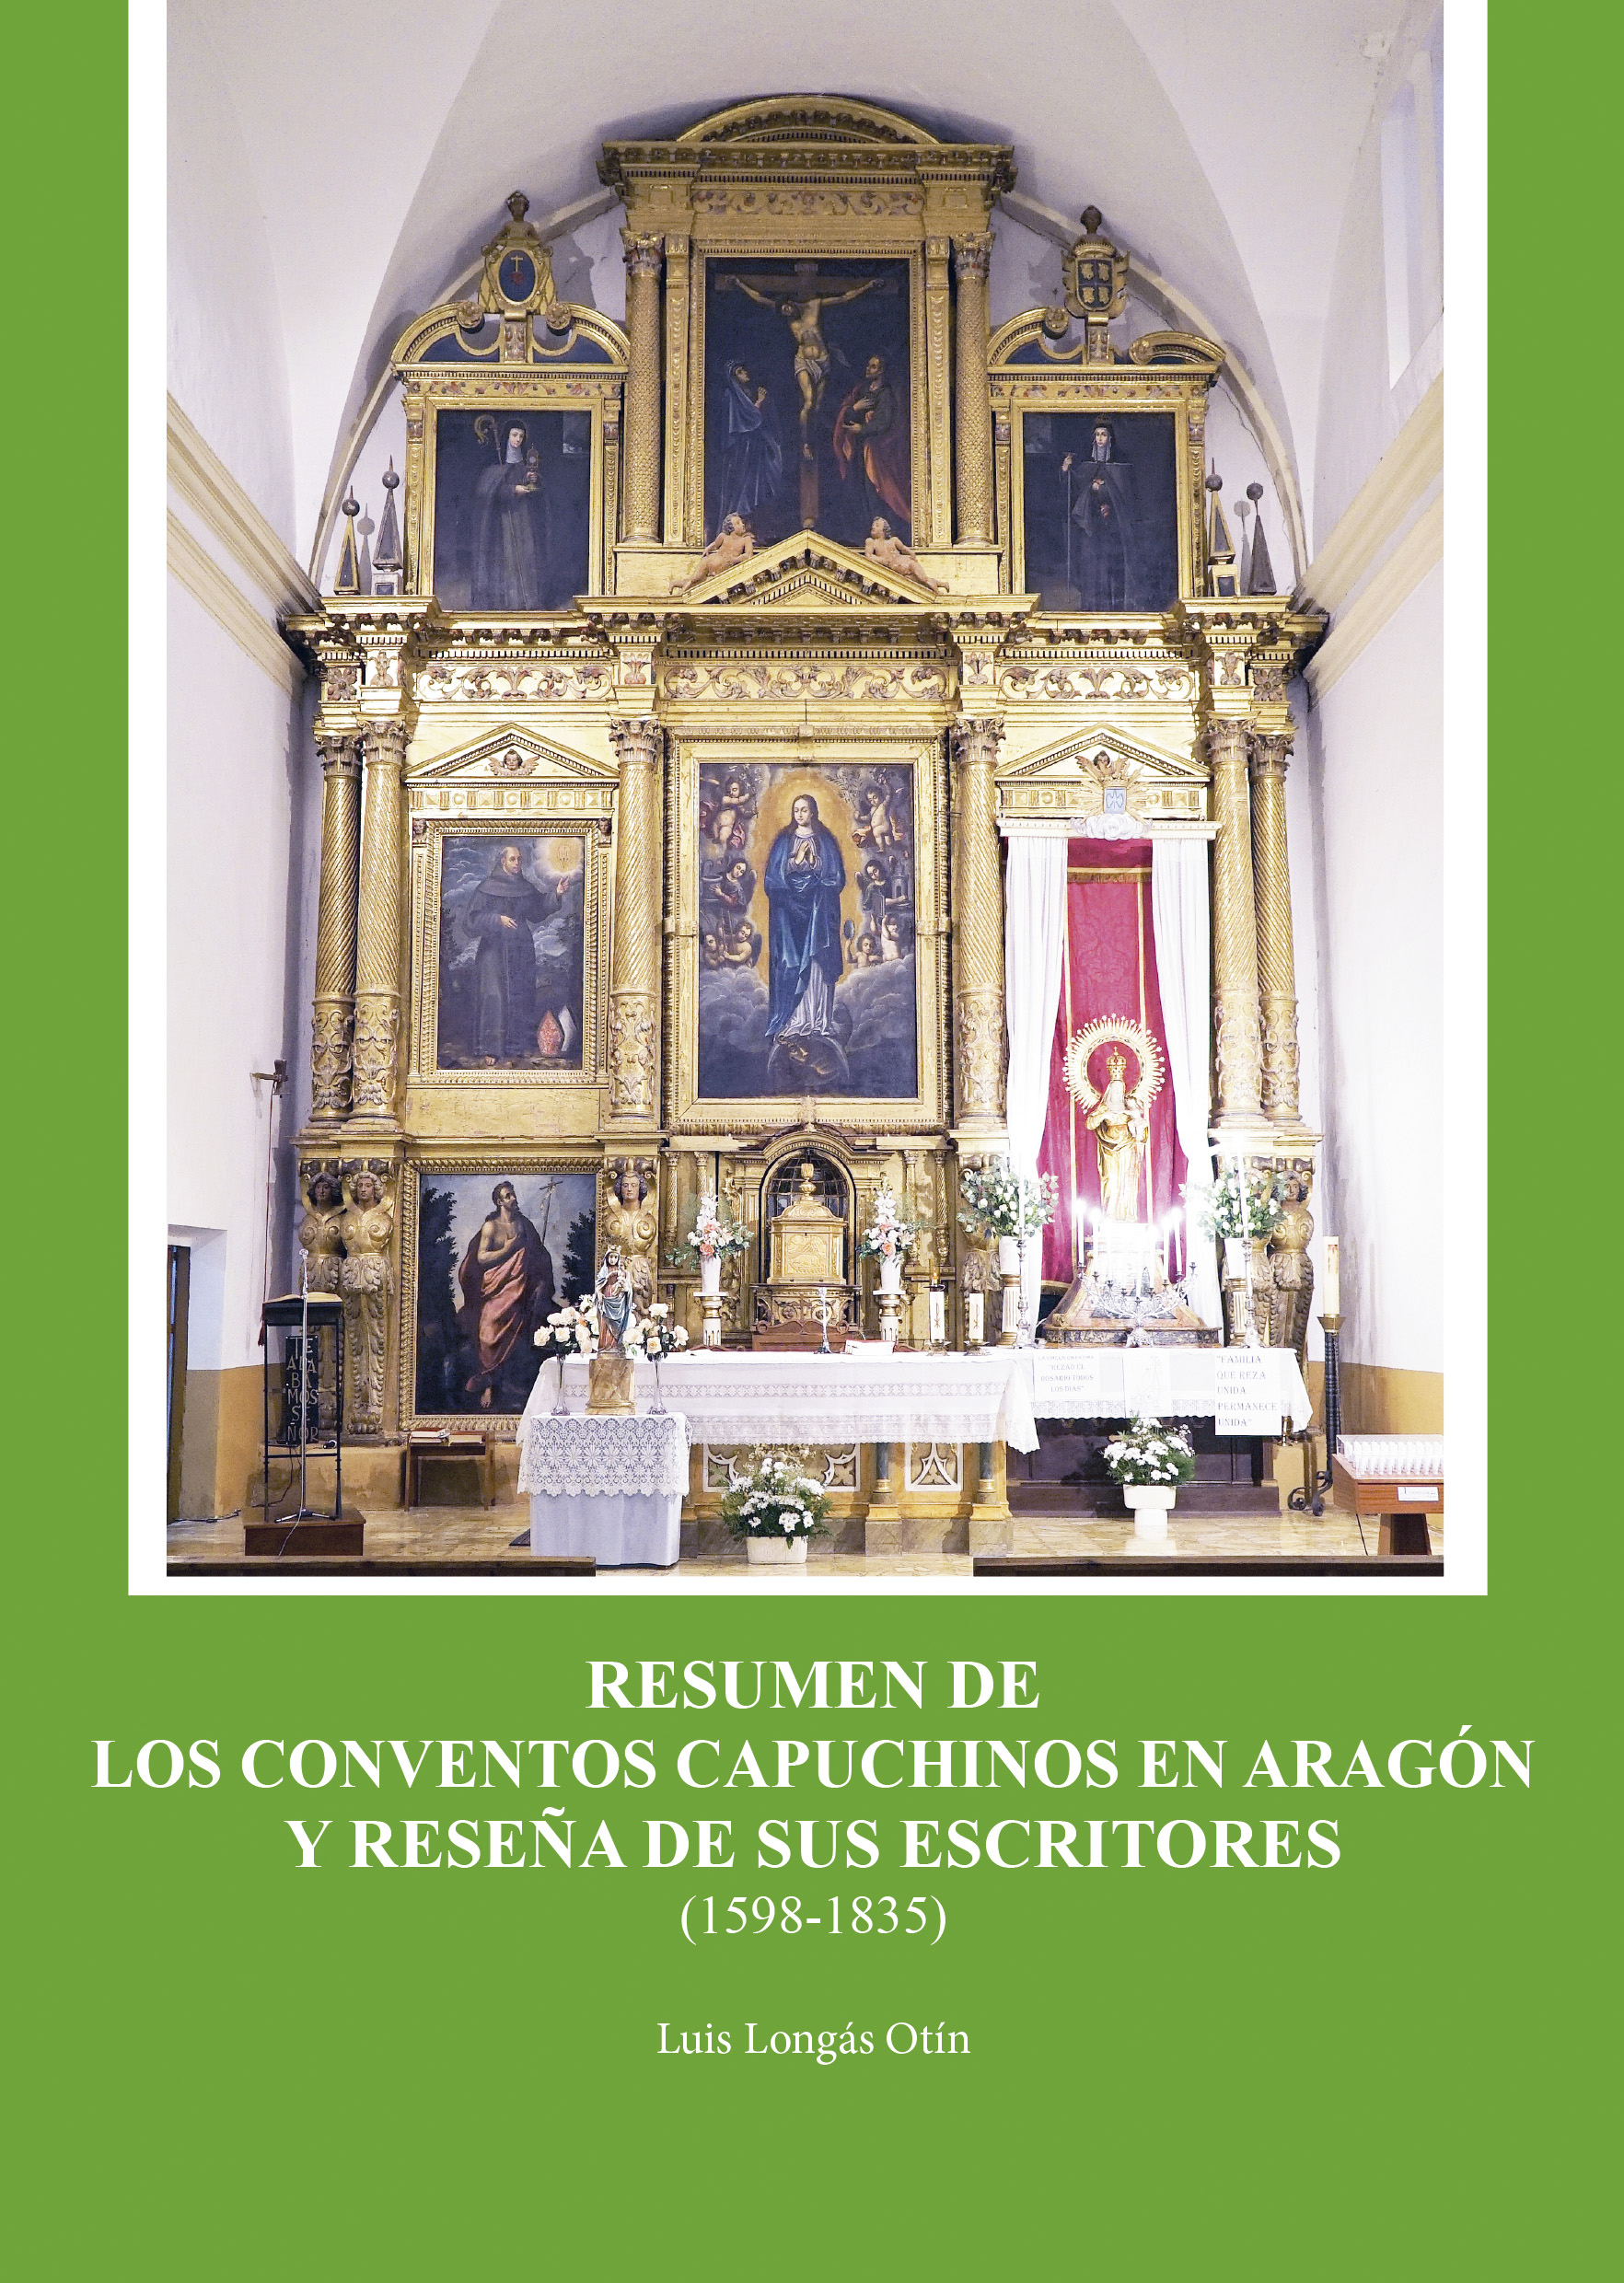 Resumen de los Conventos Capuchinos en Aragón y reseña de sus escritores (1598-1835)